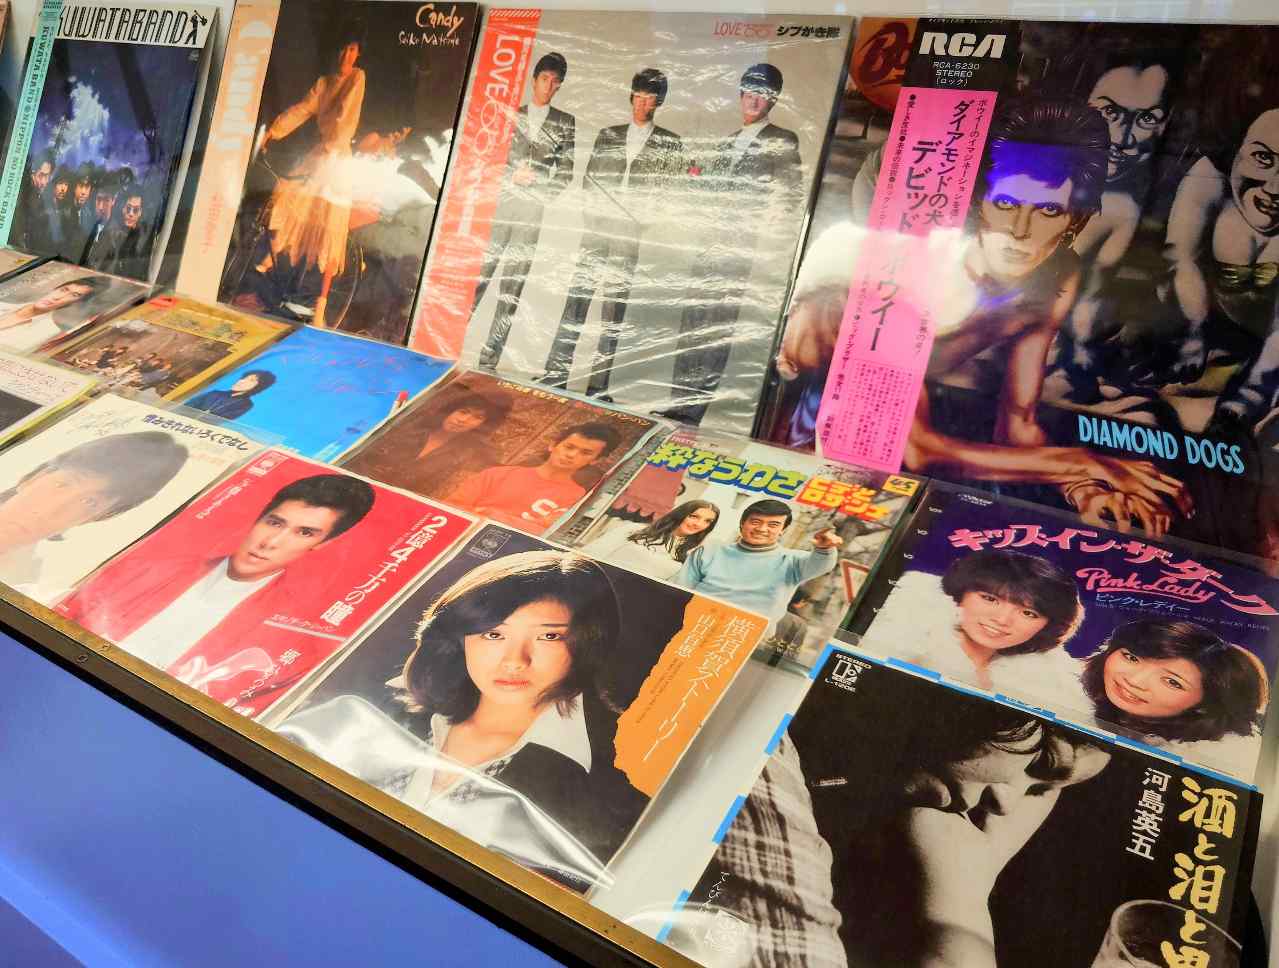 神奈川県横浜市・「PIER21 MUSIC CAFE & BAR」店内のアナログレコード